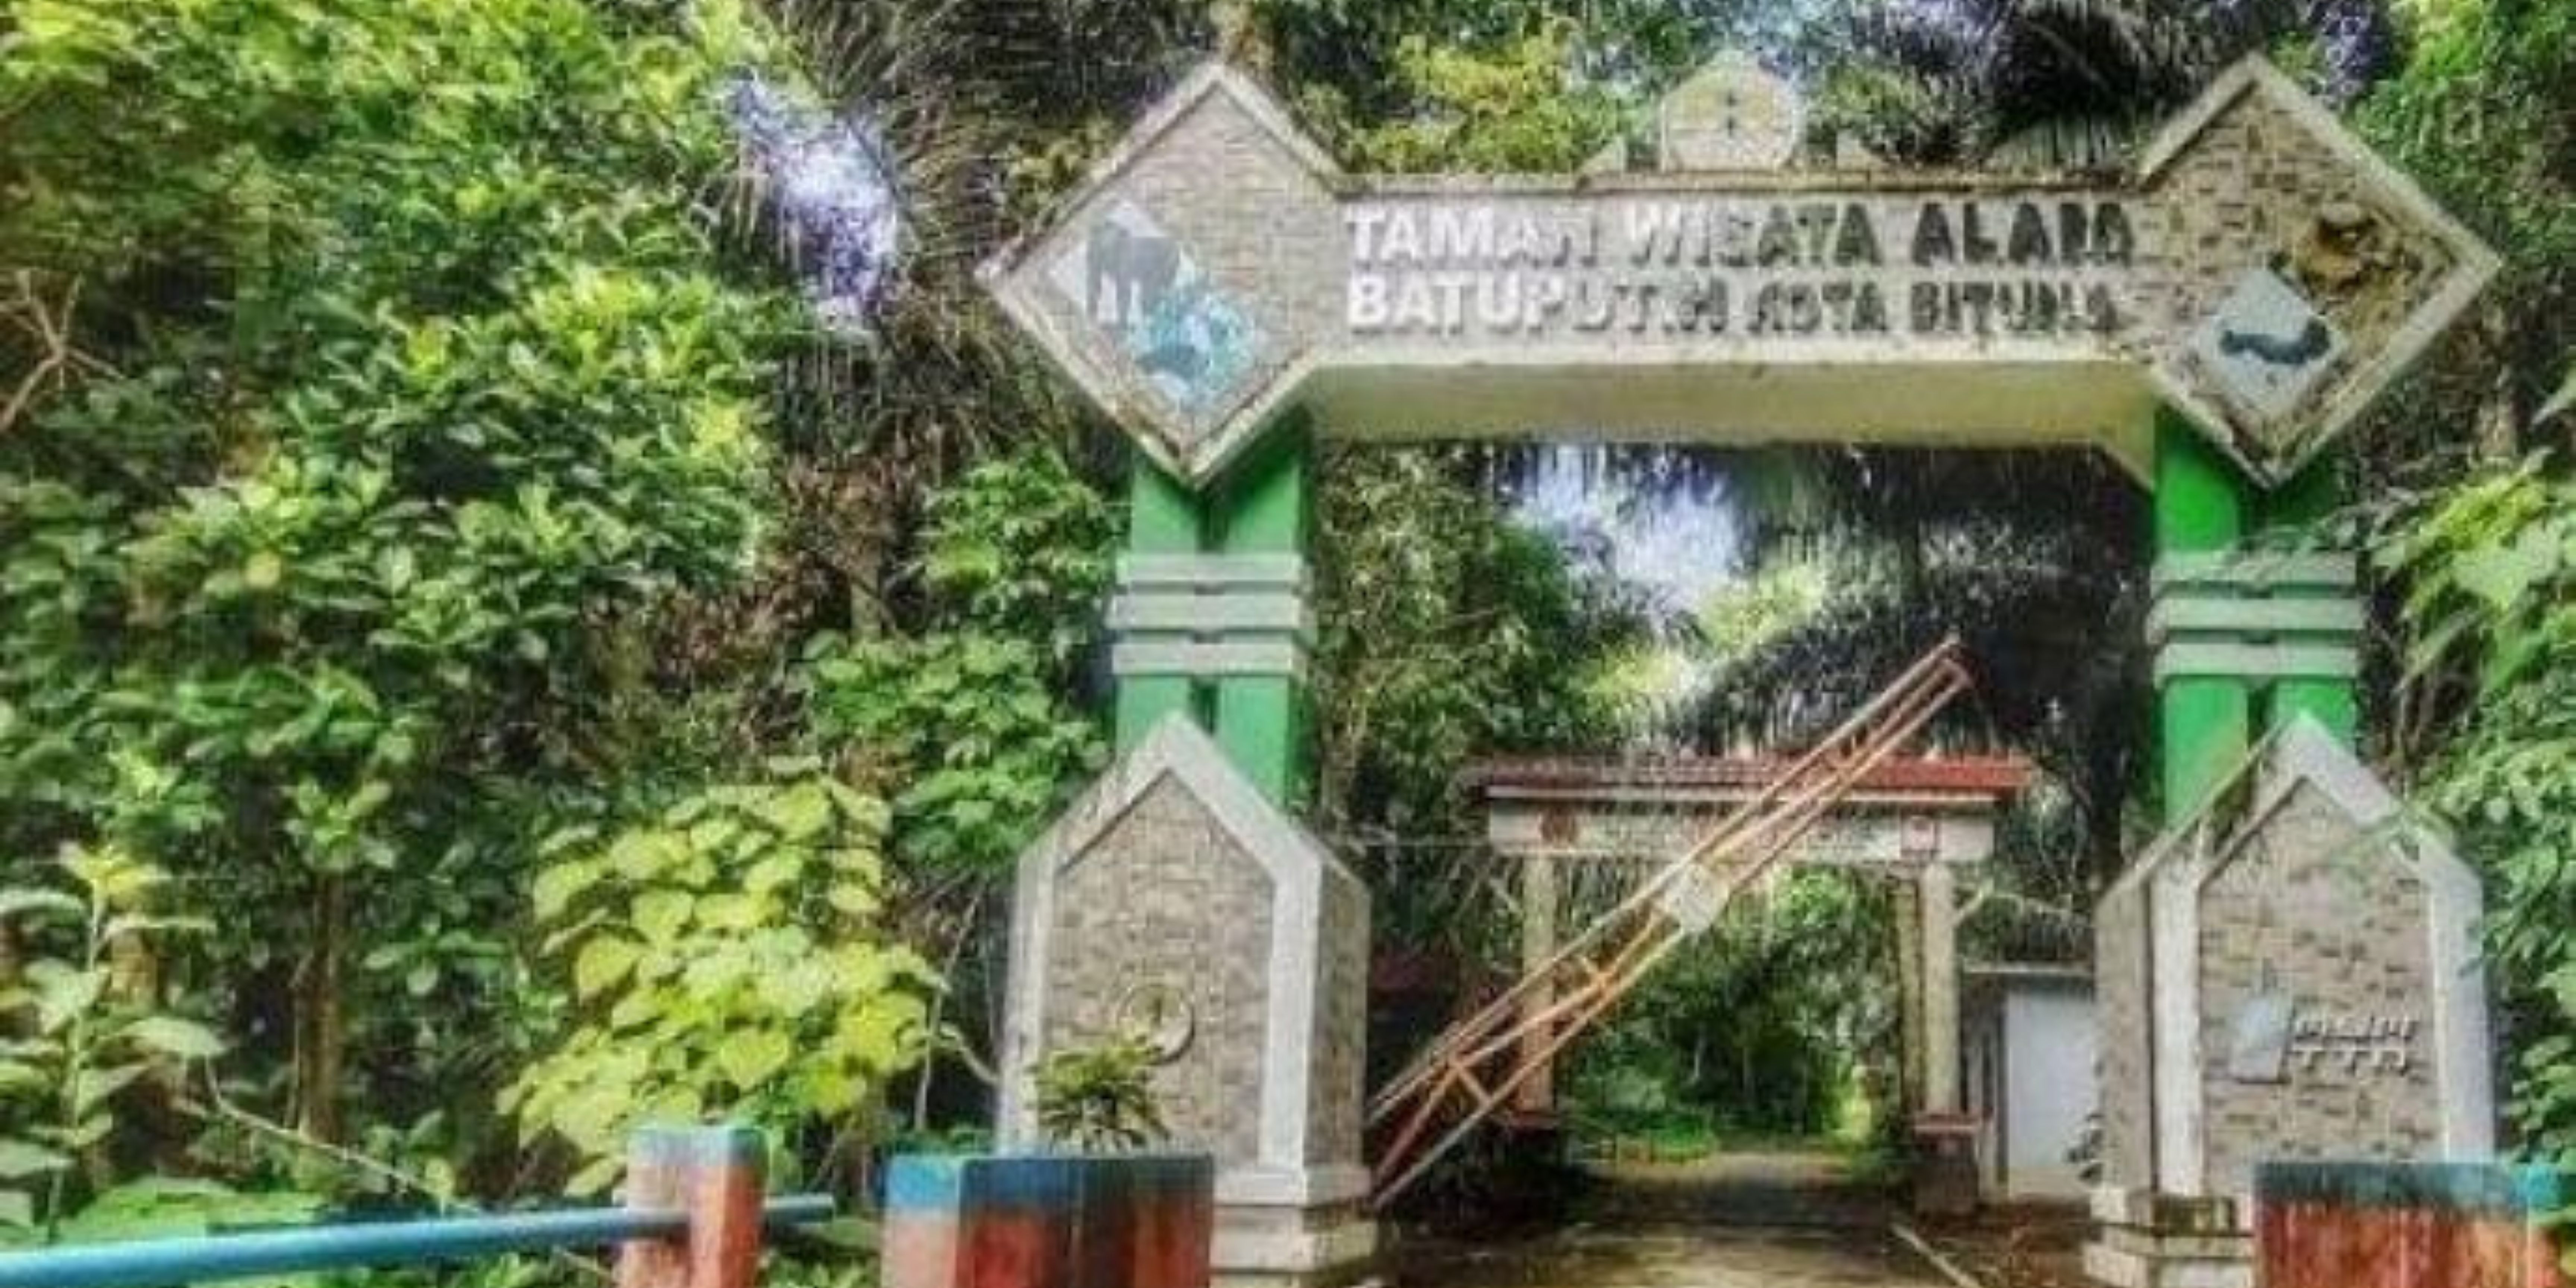 Gerbang Taman Wisata Alam di Desa wisata Batuputih Bawah